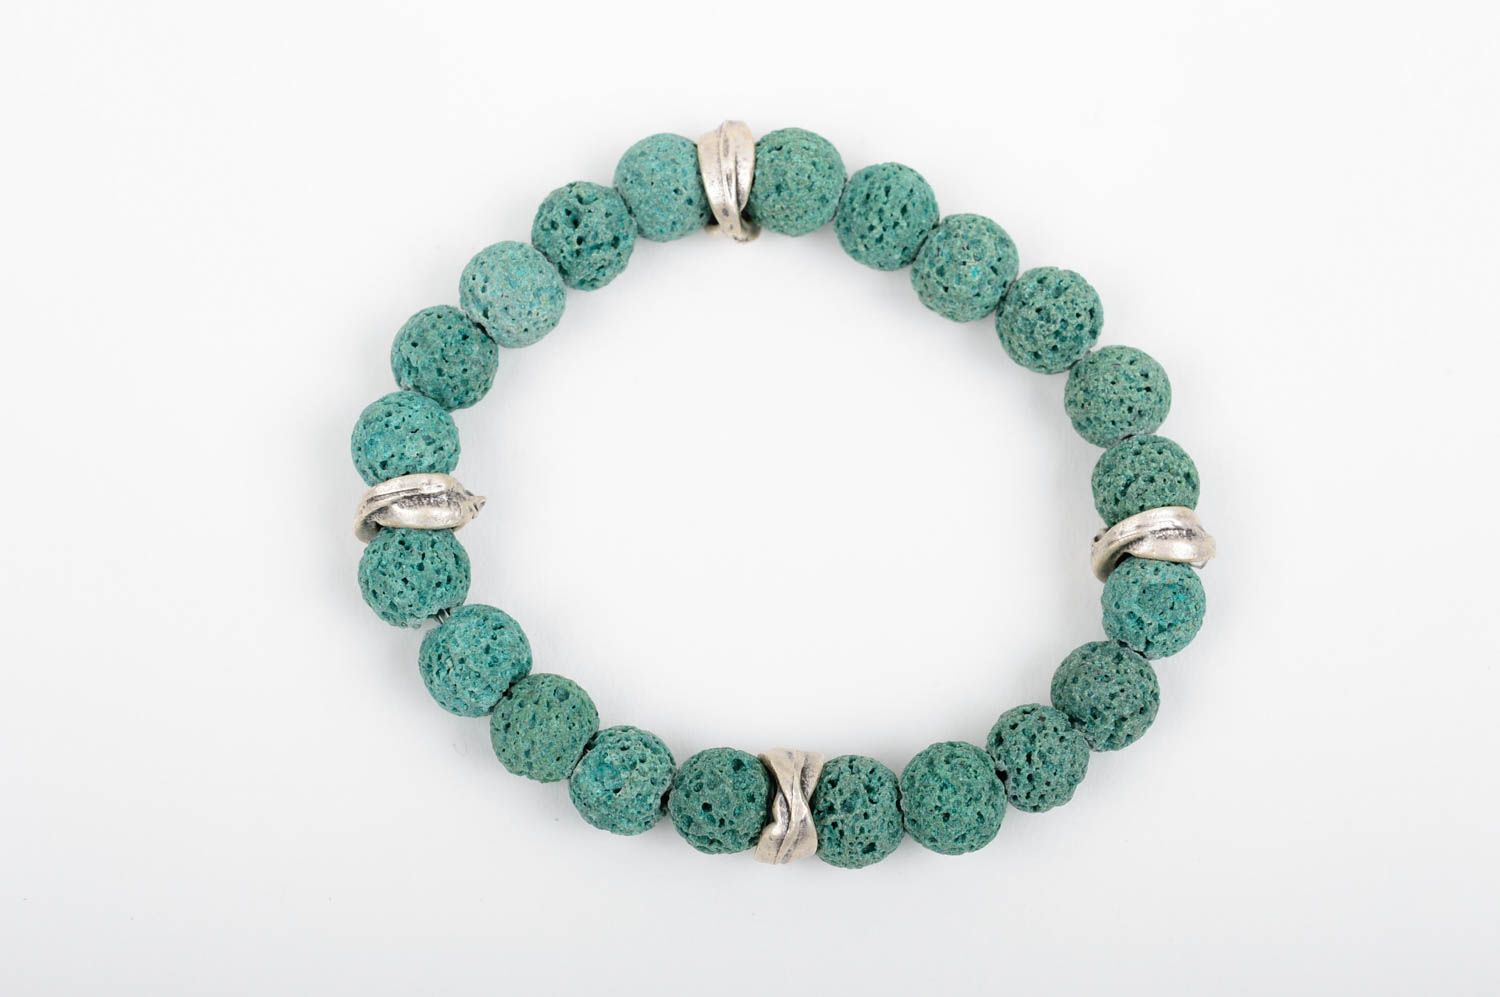 Handmade stylish bracelet female wrist jewelry accessories made of vulcanite photo 1